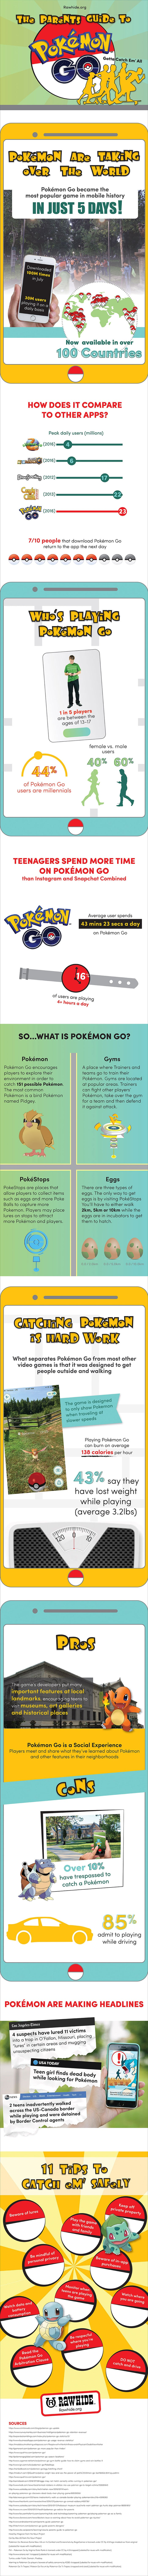 Pokemon-Go-Statistics_Infographic